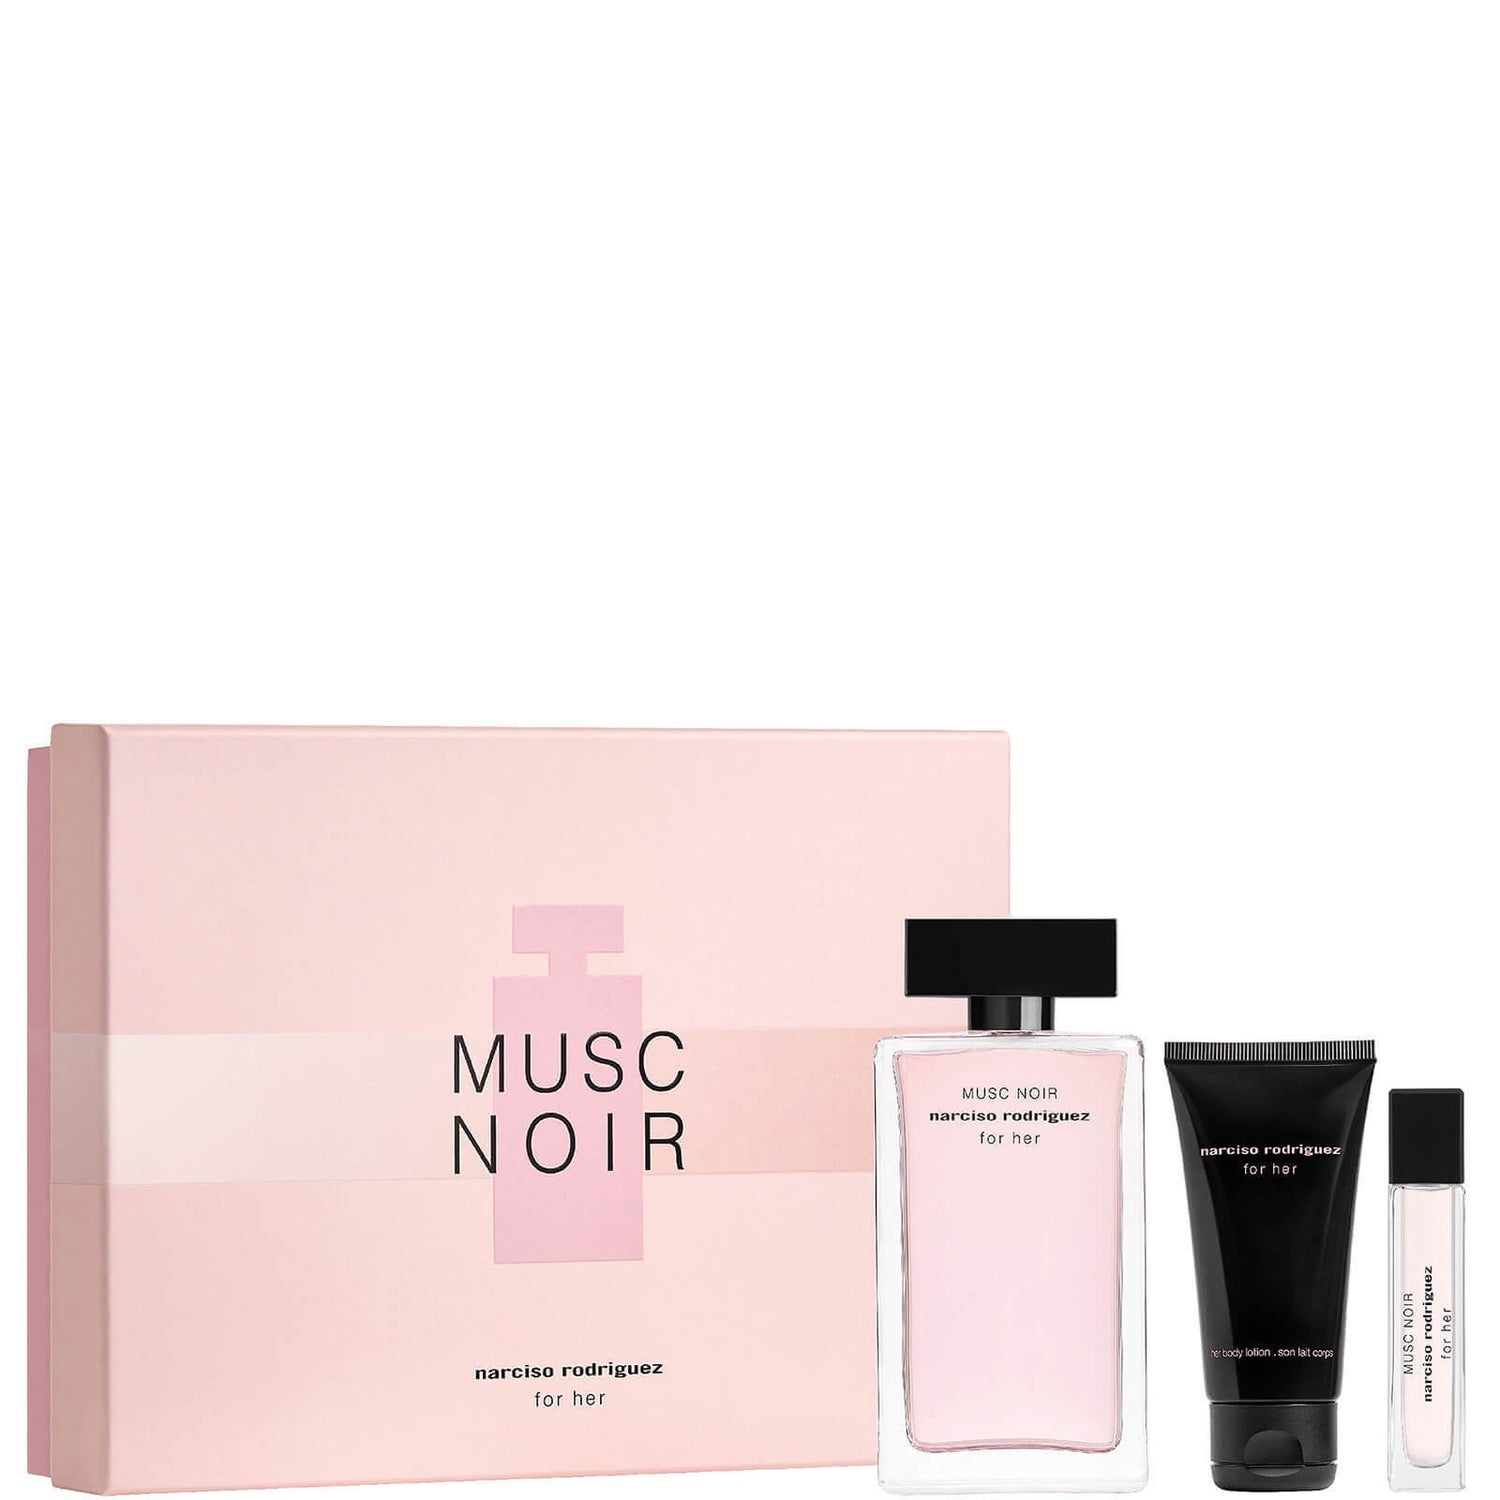 Narciso Rodriguez For Her Musc Noir Eau de Parfum sæt - 100ml